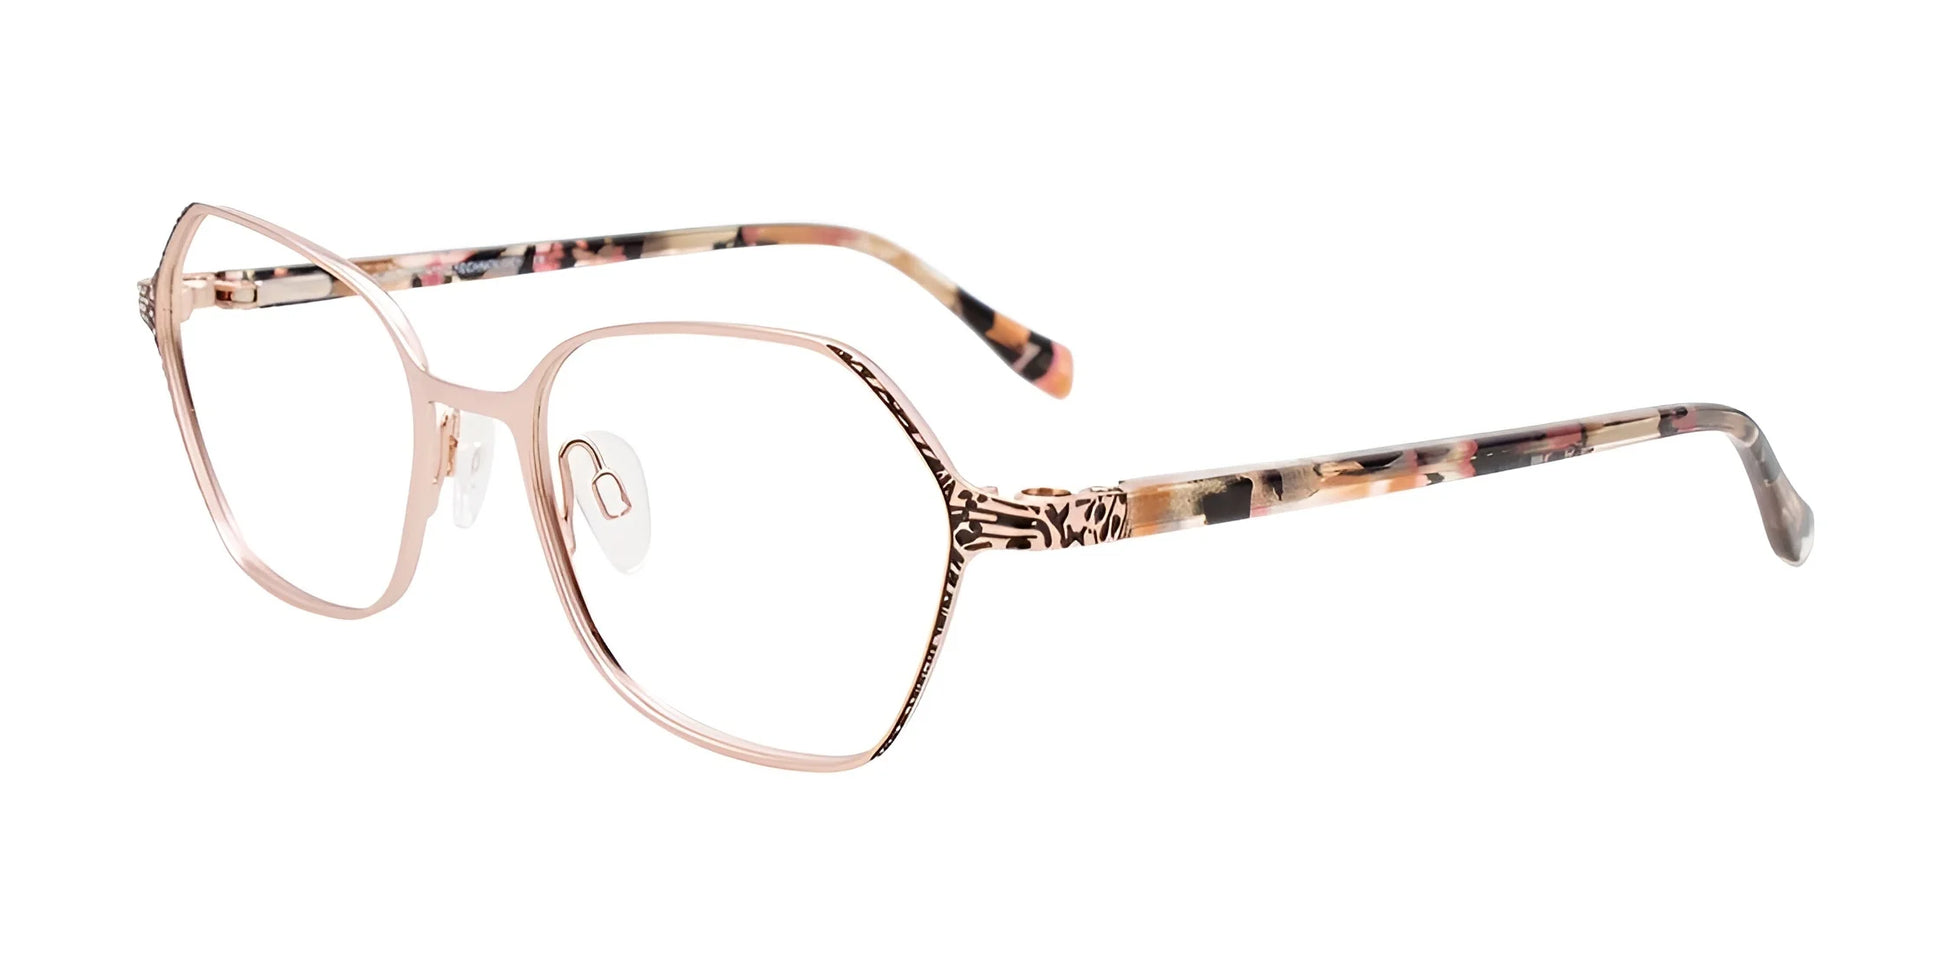 Takumi TK1211 Eyeglasses Sat Pink Gold & Black / Pink Tort